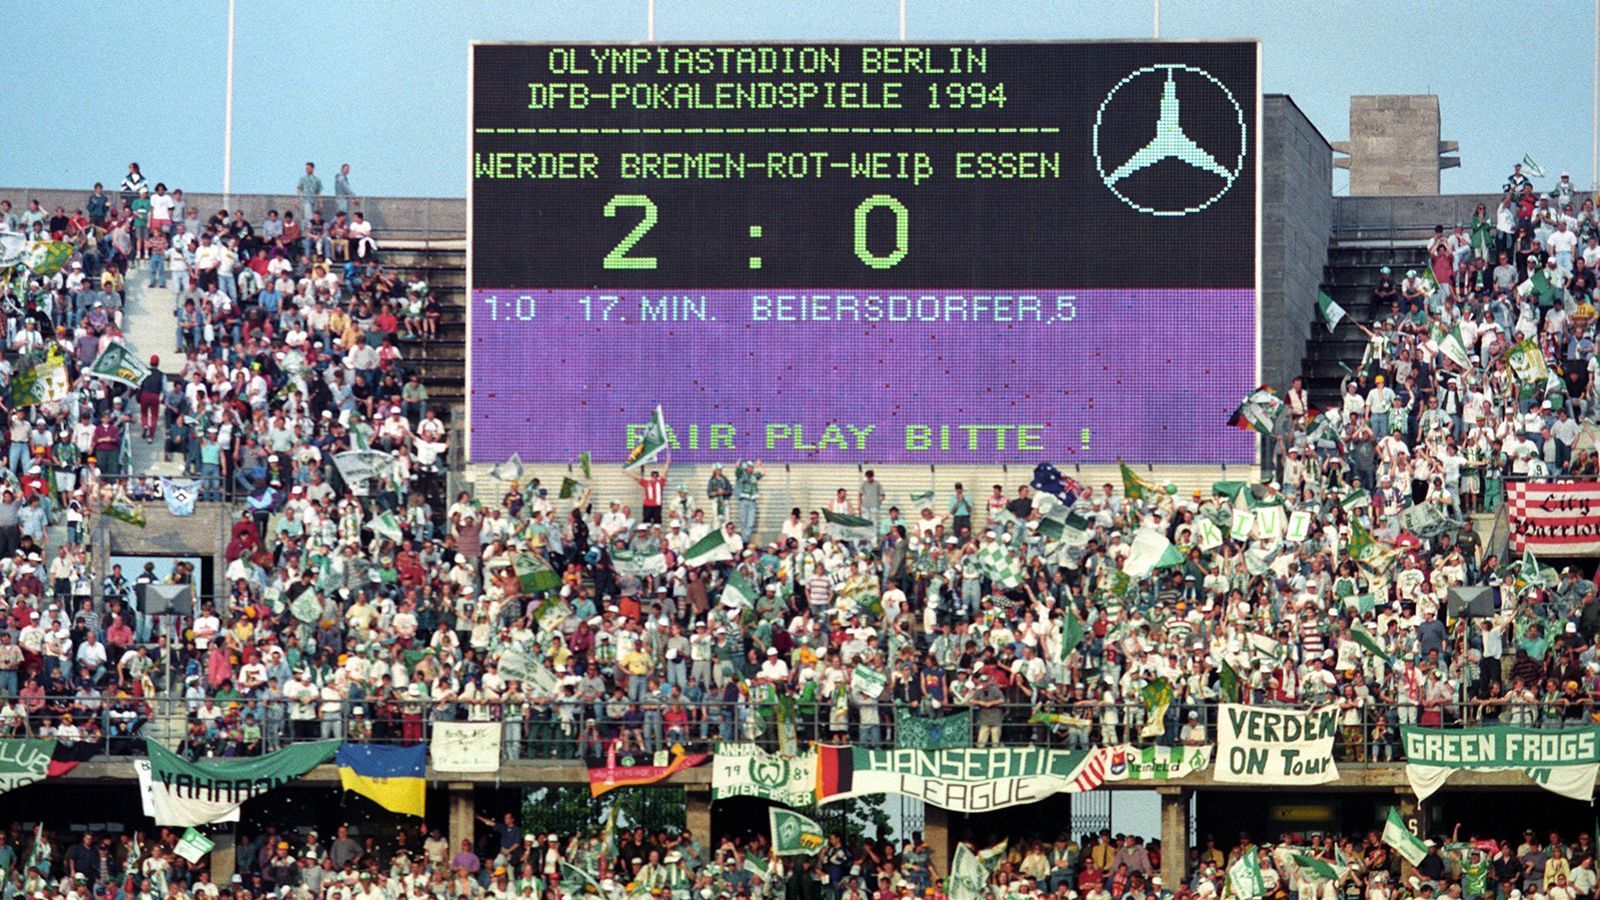 
                <strong>Werder Bremen & RW Essen </strong><br>
                1994 stieg RW Essen aus der 2. Liga ab, erreichte aber völlig überraschend das DFB-Pokalfinale. In Berlin feierten beide Fanlager ein ausgelassenes Fußballfest, tauschten Merchandise und tranken zusammen. Bremen gewann das Endspiel letztendlich mit 3:1, trotzdem wird die Freundschaft zwischen den Bremern und Essenern in großen Teilen der Fanszene weitergelebt.
              